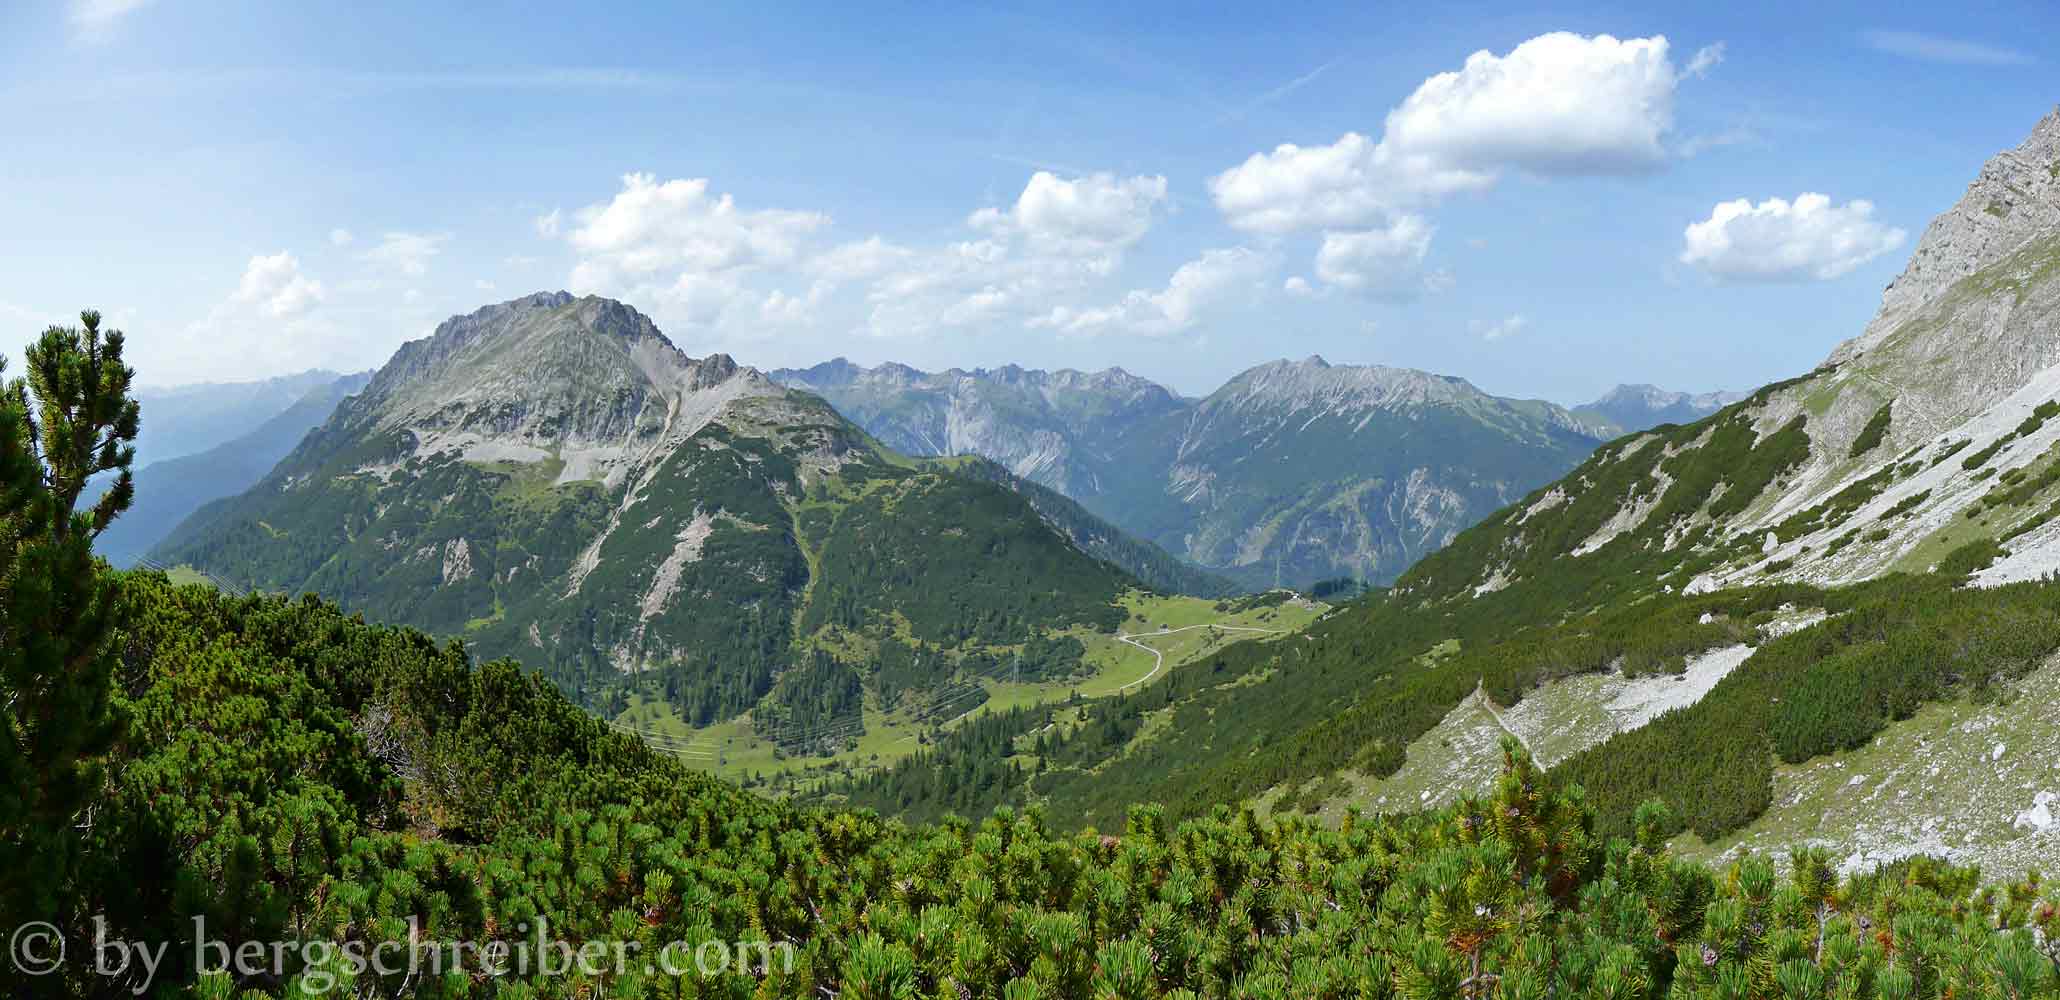 Marienbergjoch, Handschuhspitze und Lechtaler Alpen